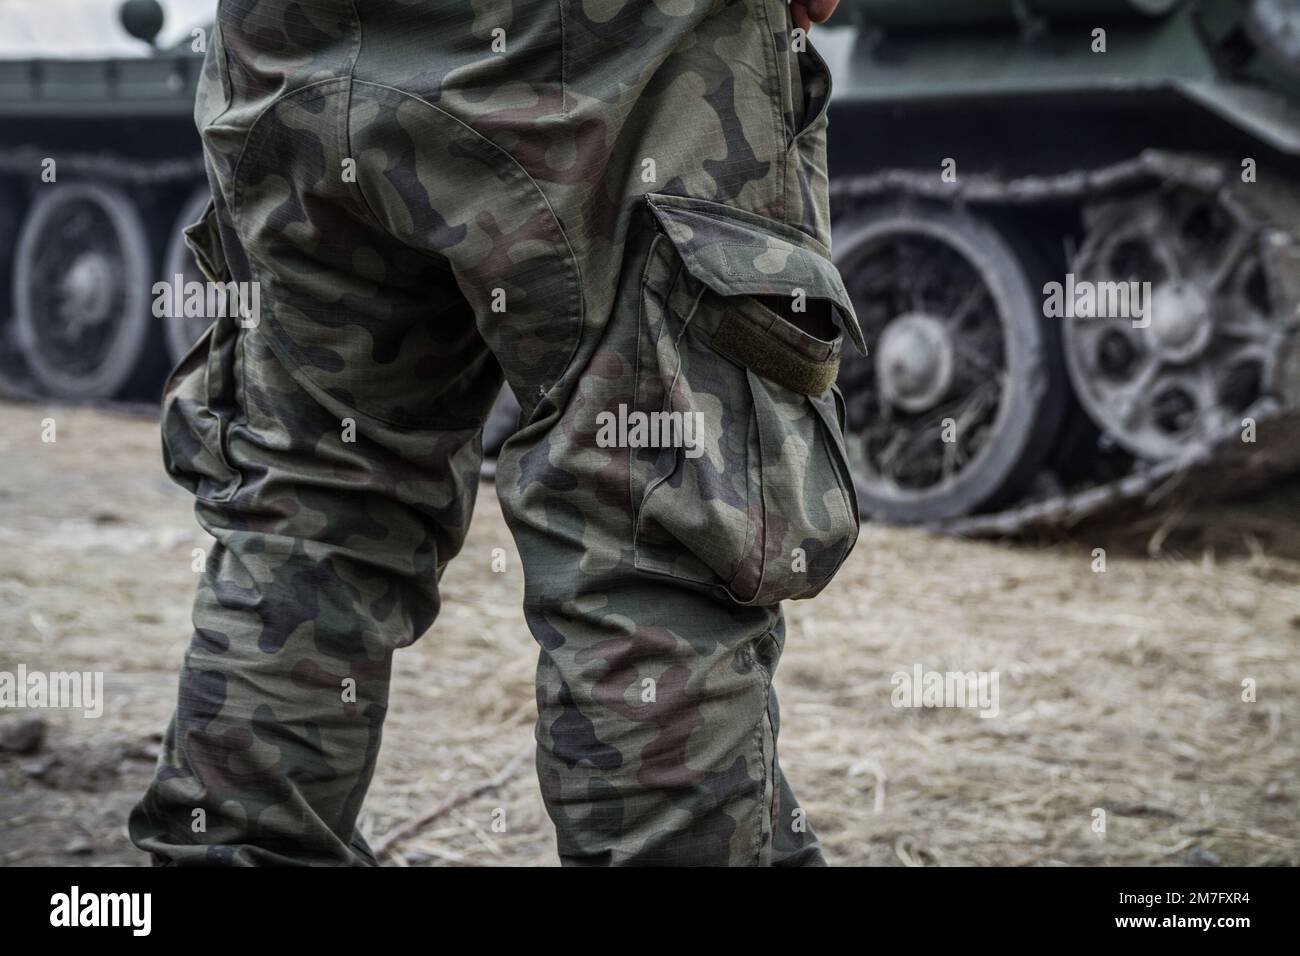 Pantalones militares - pantalones camuflaje - Ropa-Militar (2